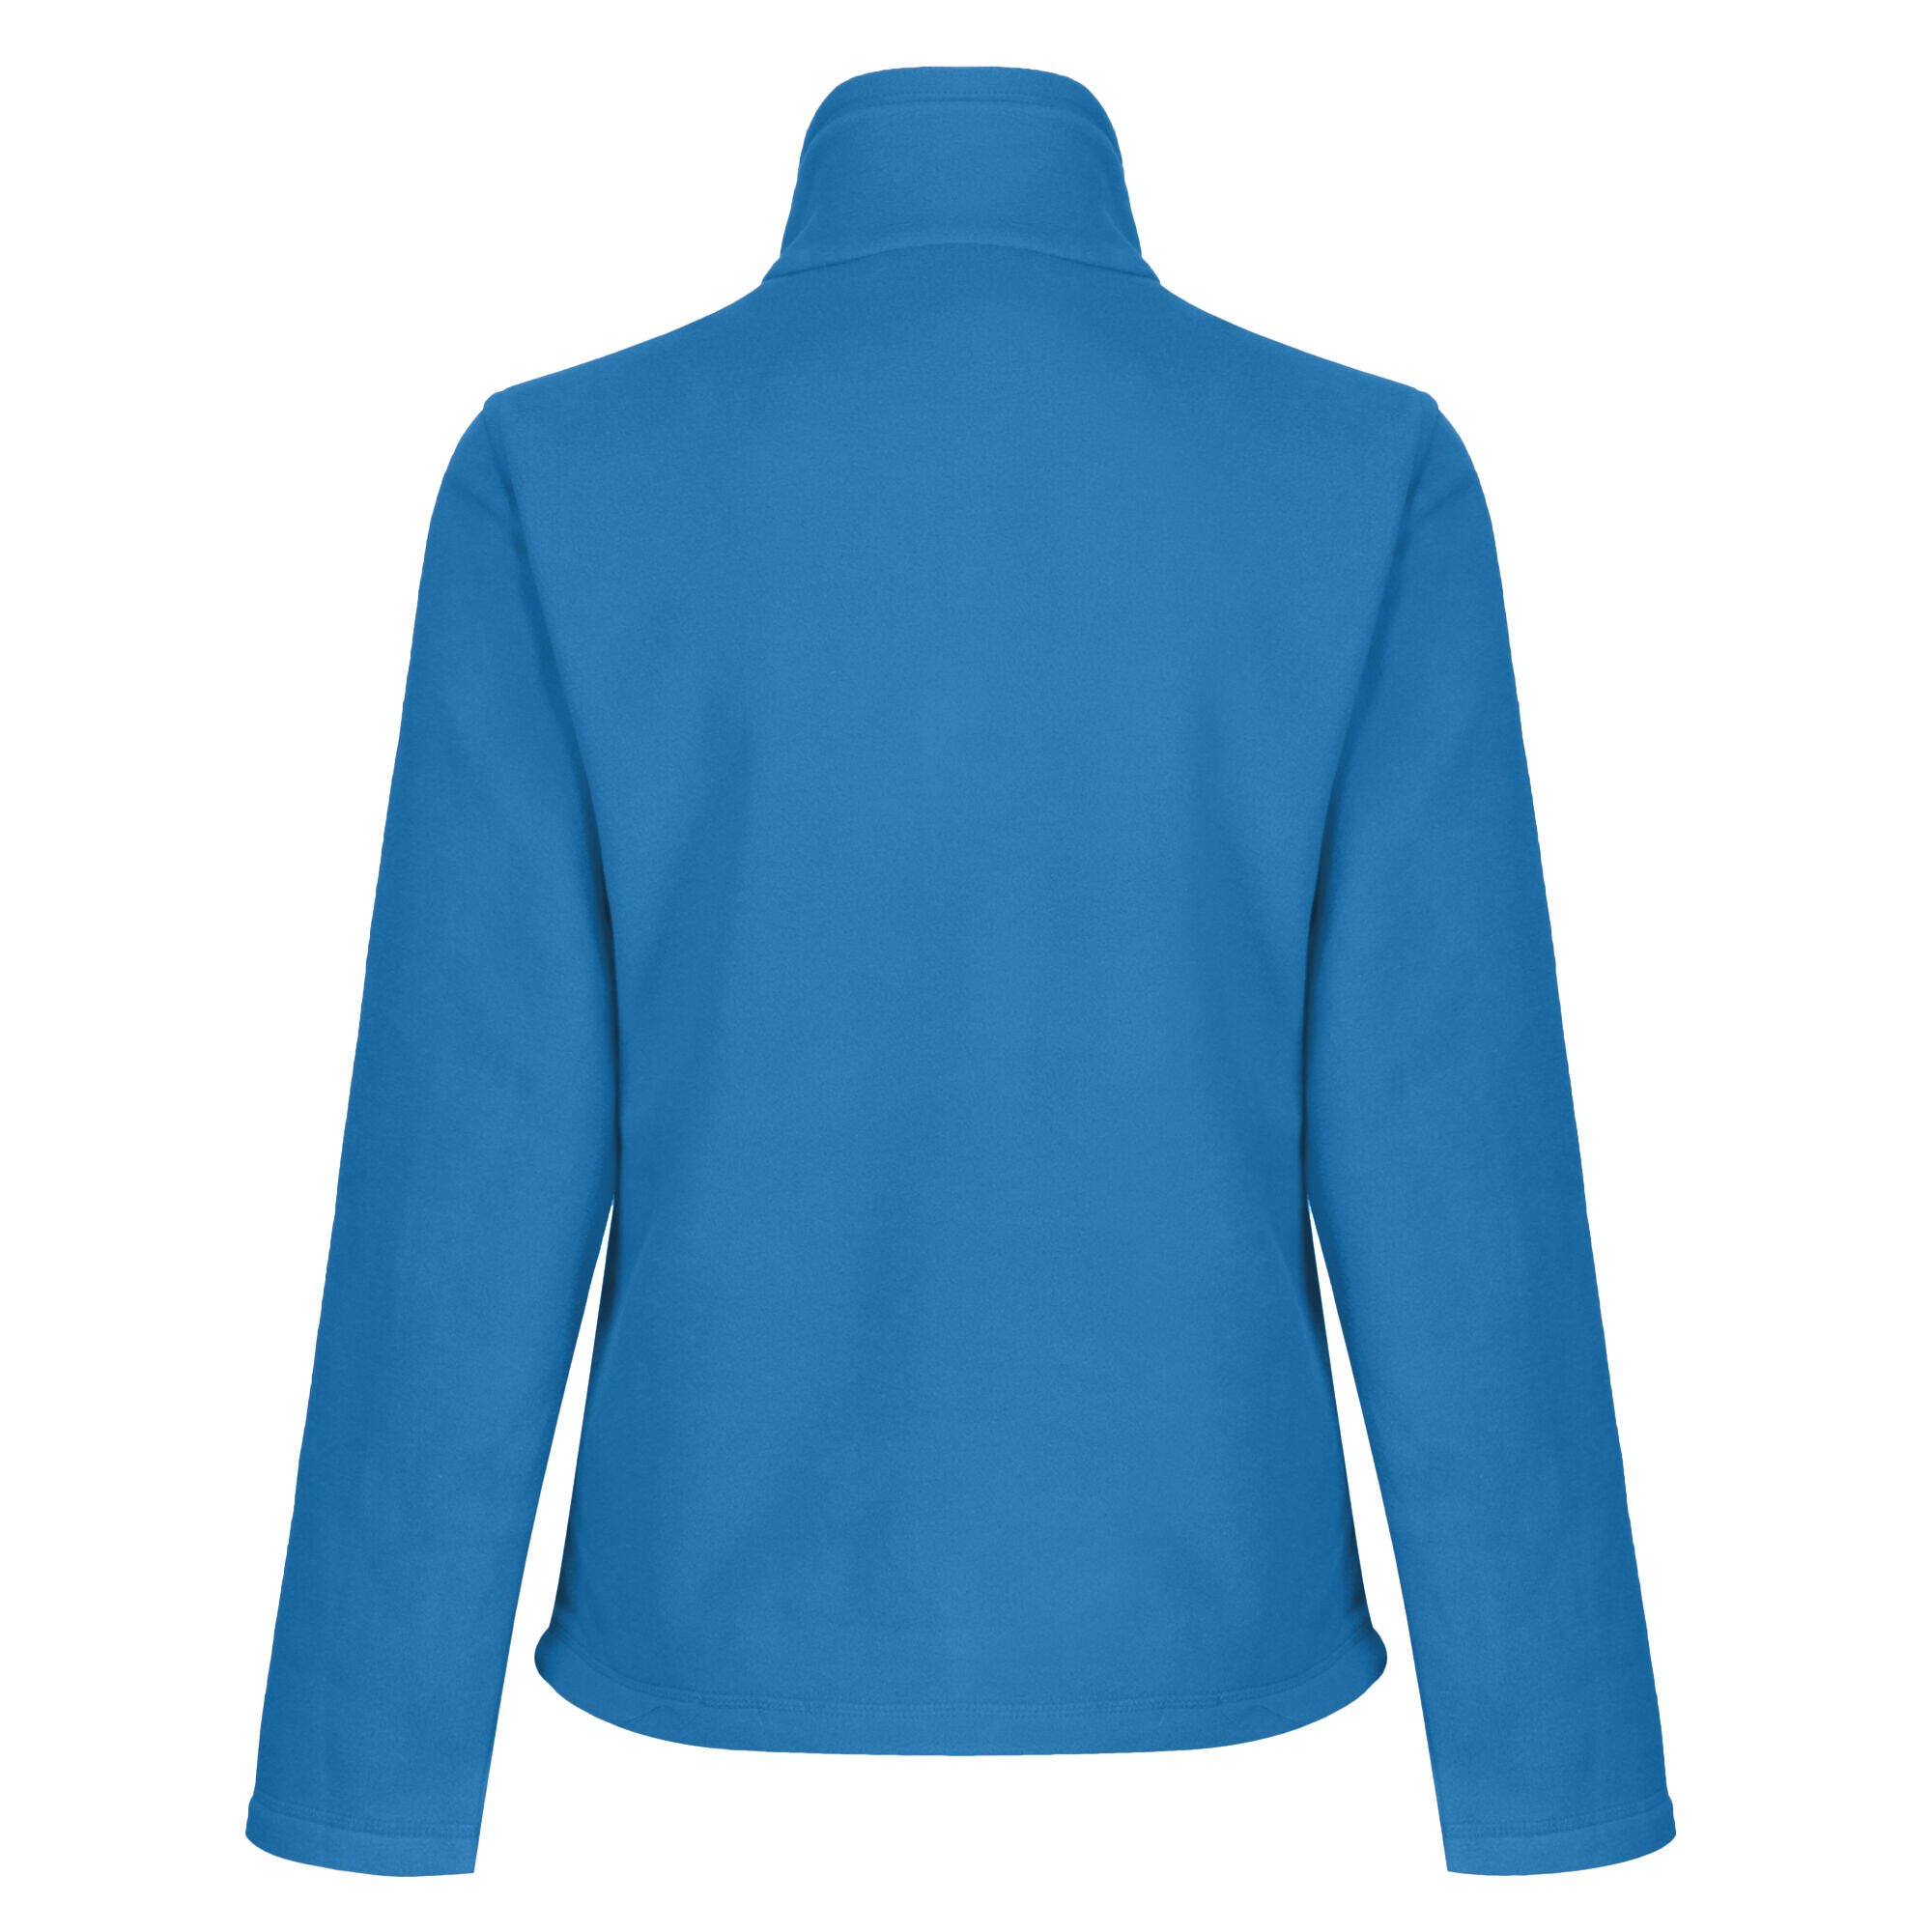 Womens/Ladies FullZip 210 Series Microfleece Jacket (Oxford Blue) 2/4